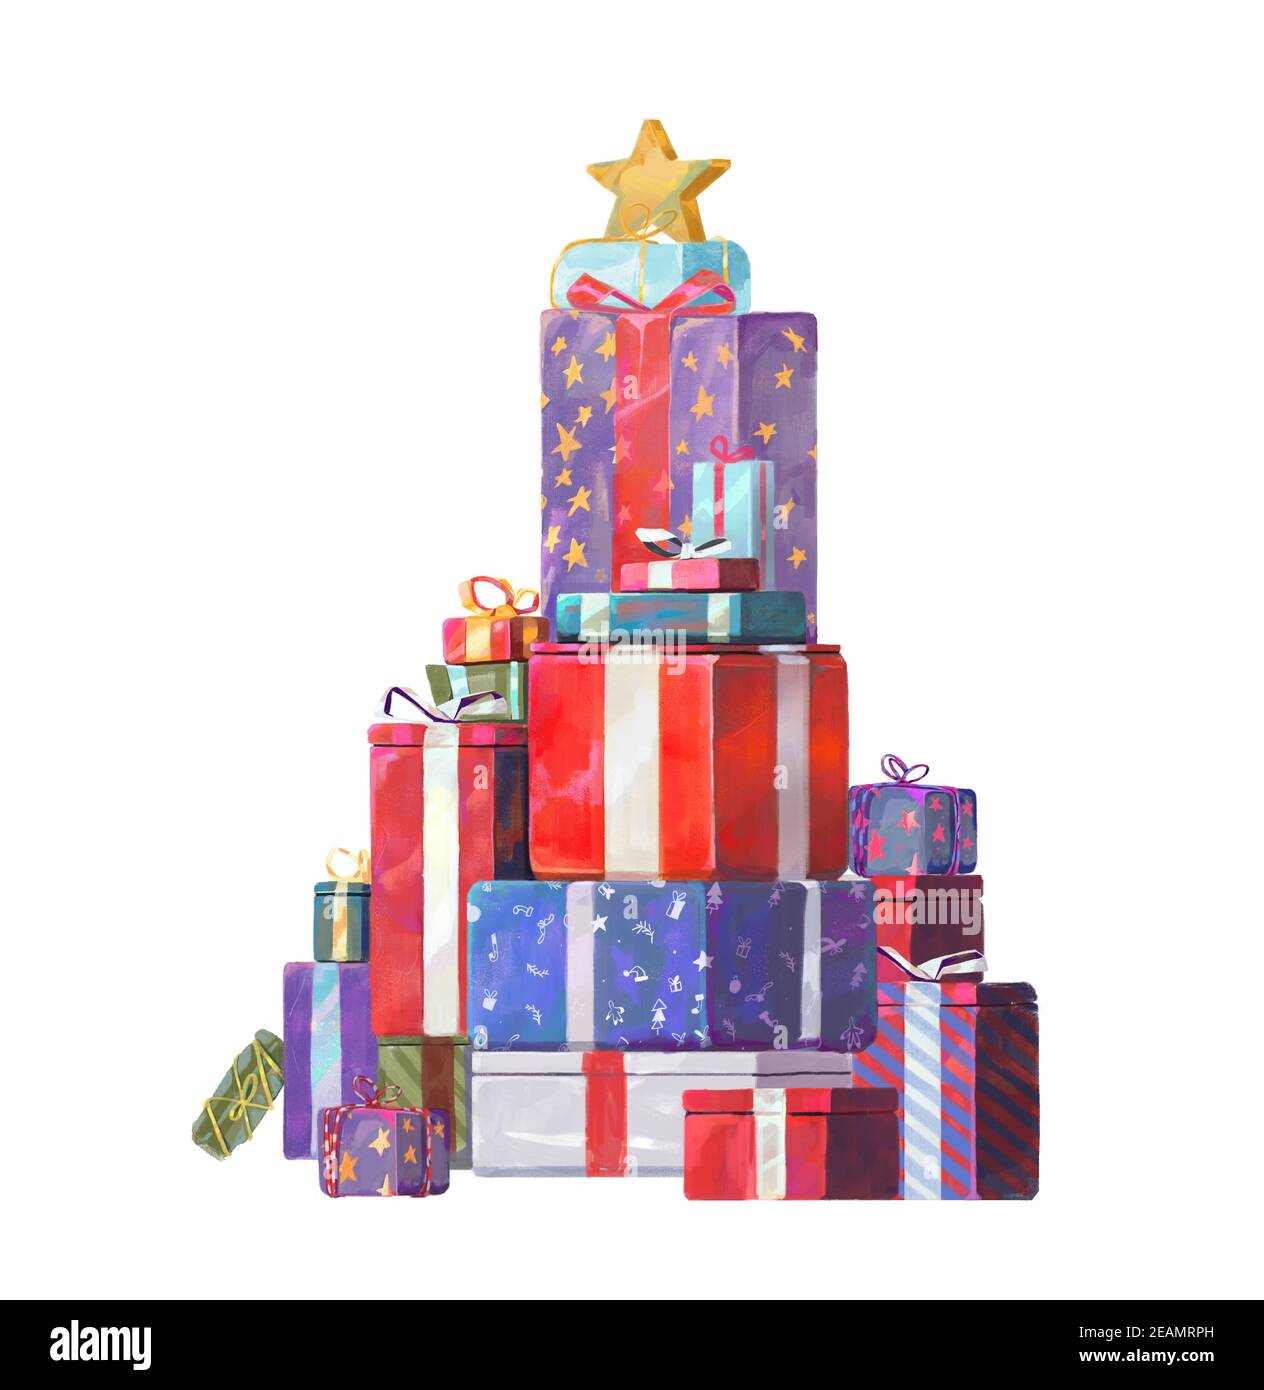 Illustration de l'arbre de Noël fait de cadeaux et cadeaux colorés. Peinture aquarelle semi réaliste. Concept de vacances. Banque D'Images